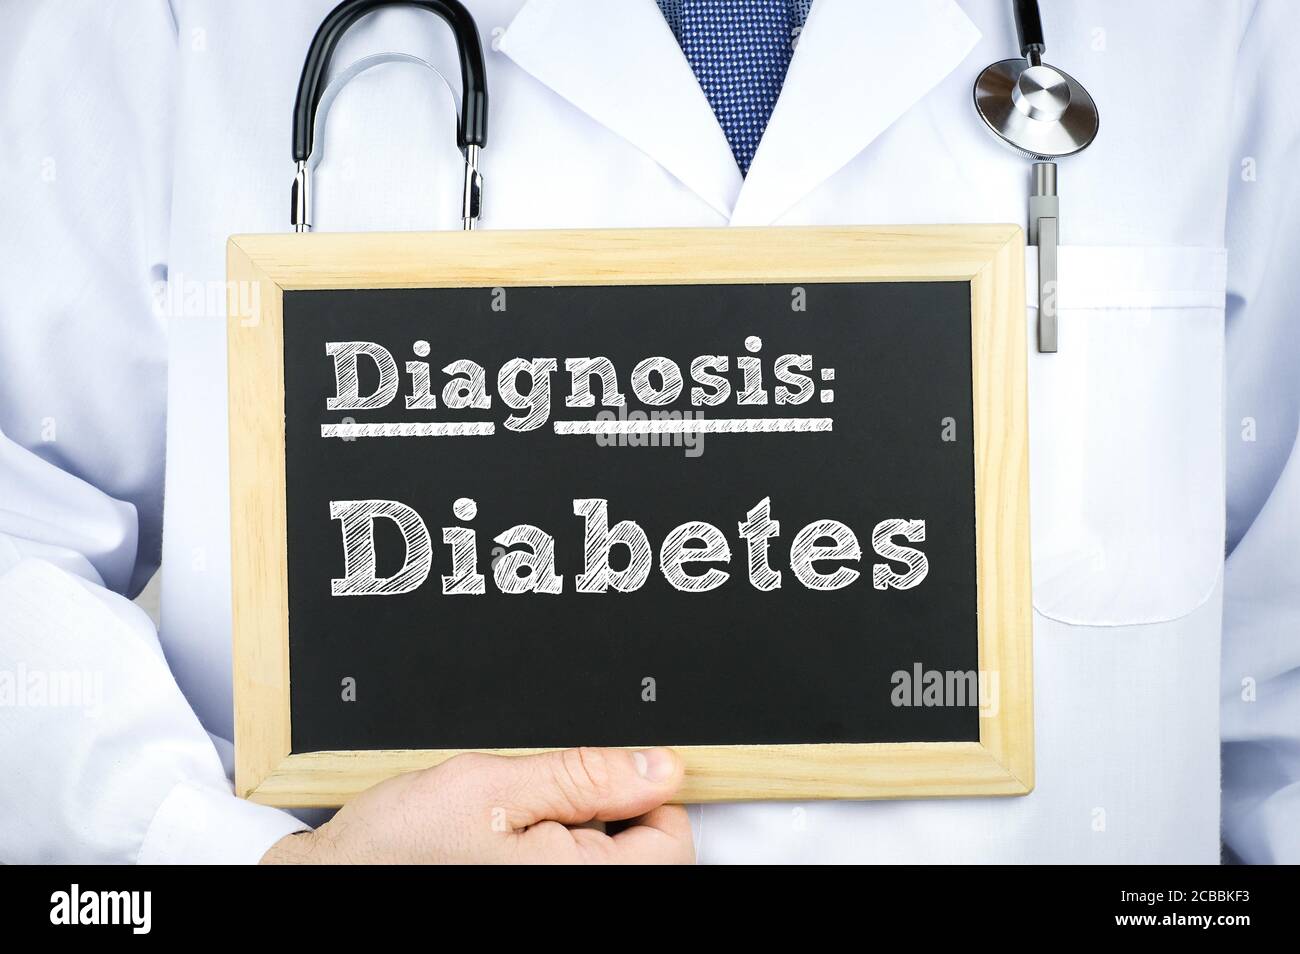 Diagnosis Diabetes Stock Photo